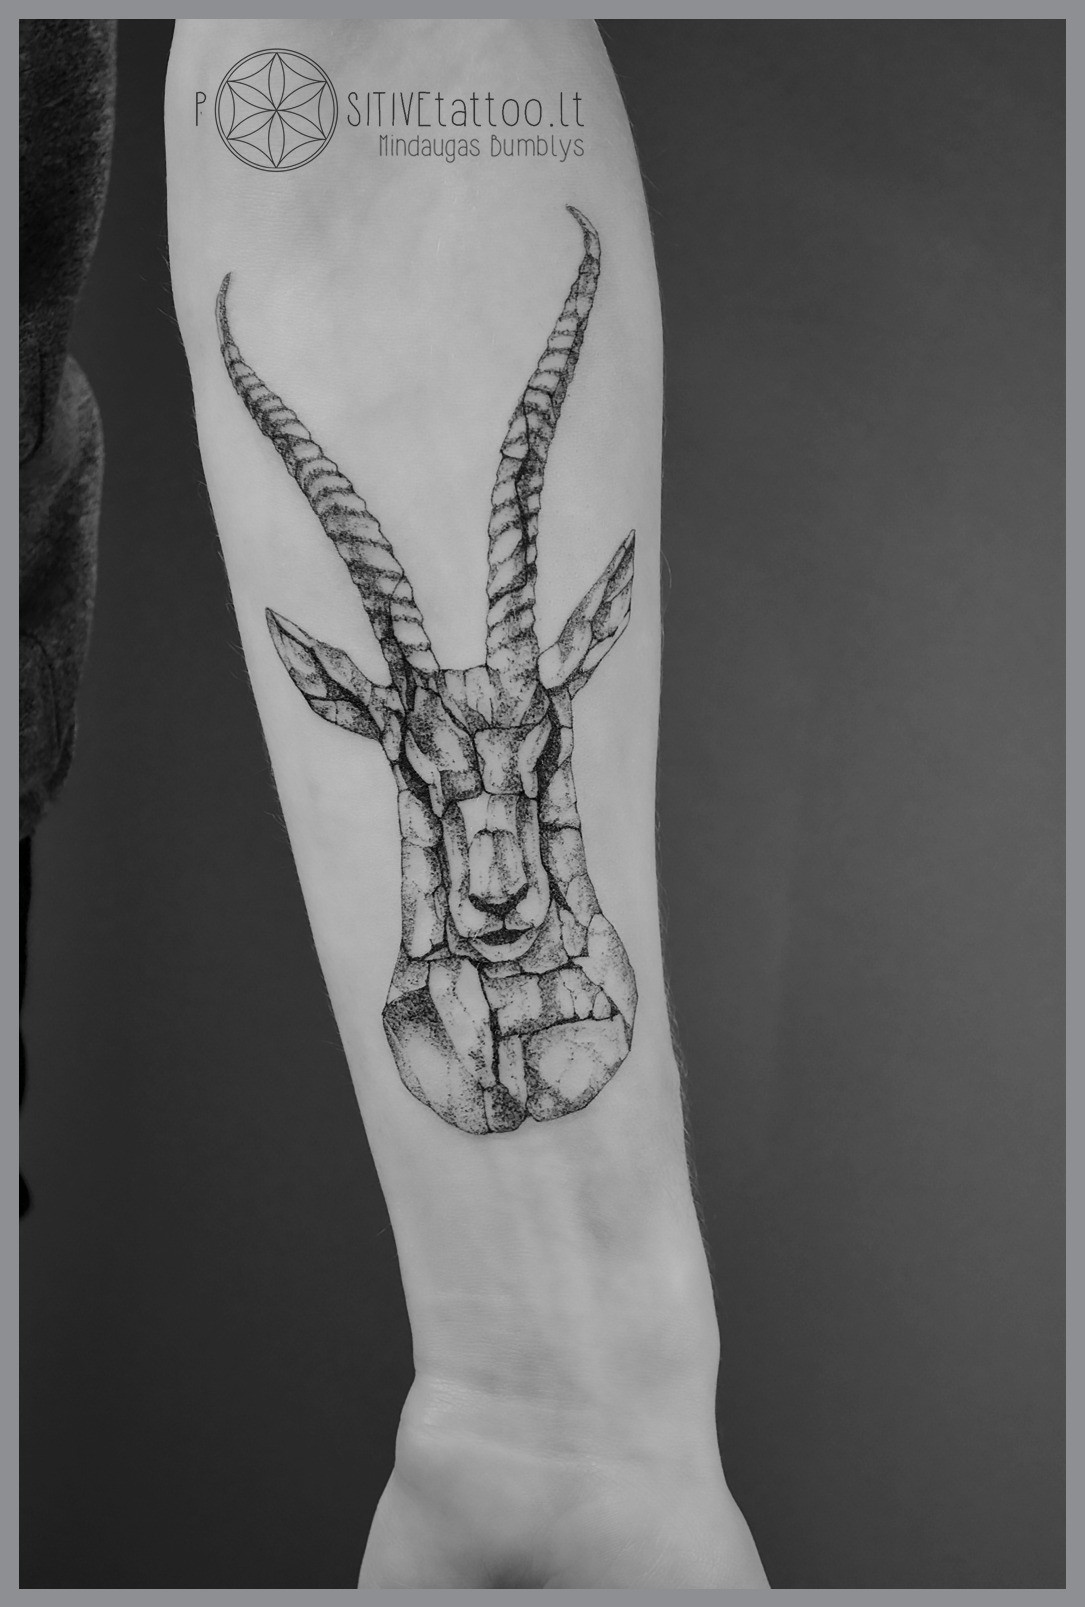 Mindaugas Bumblys tattoo artist — Tattoo and design by Mindaugas Bumblys